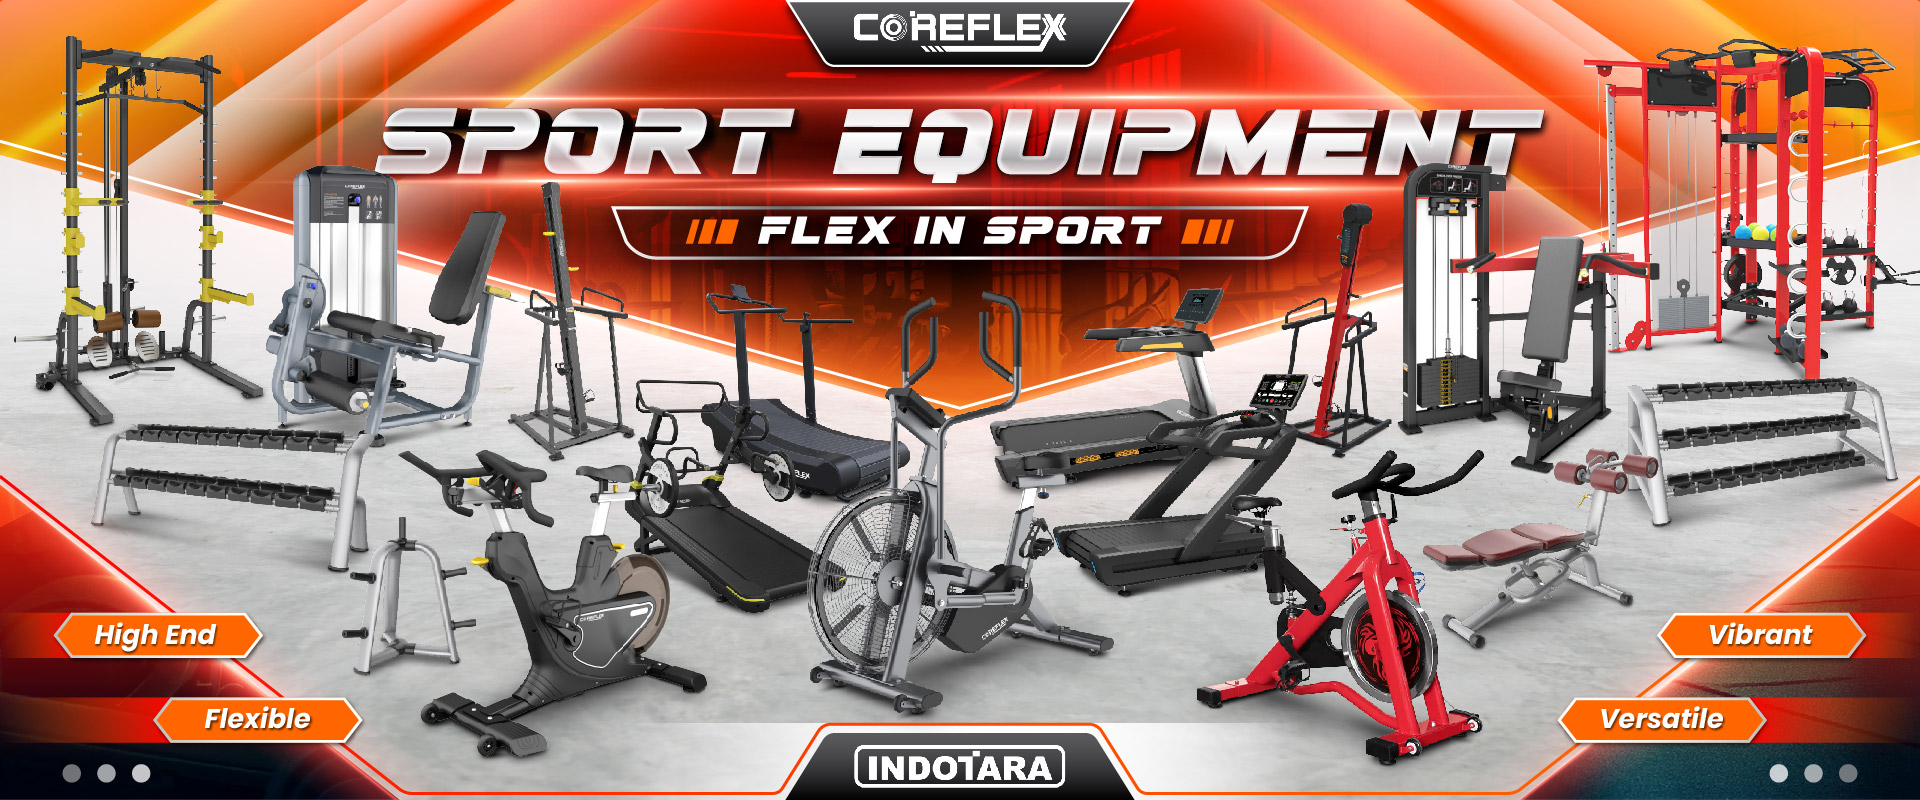 COREFLEX Best Sport Equipment